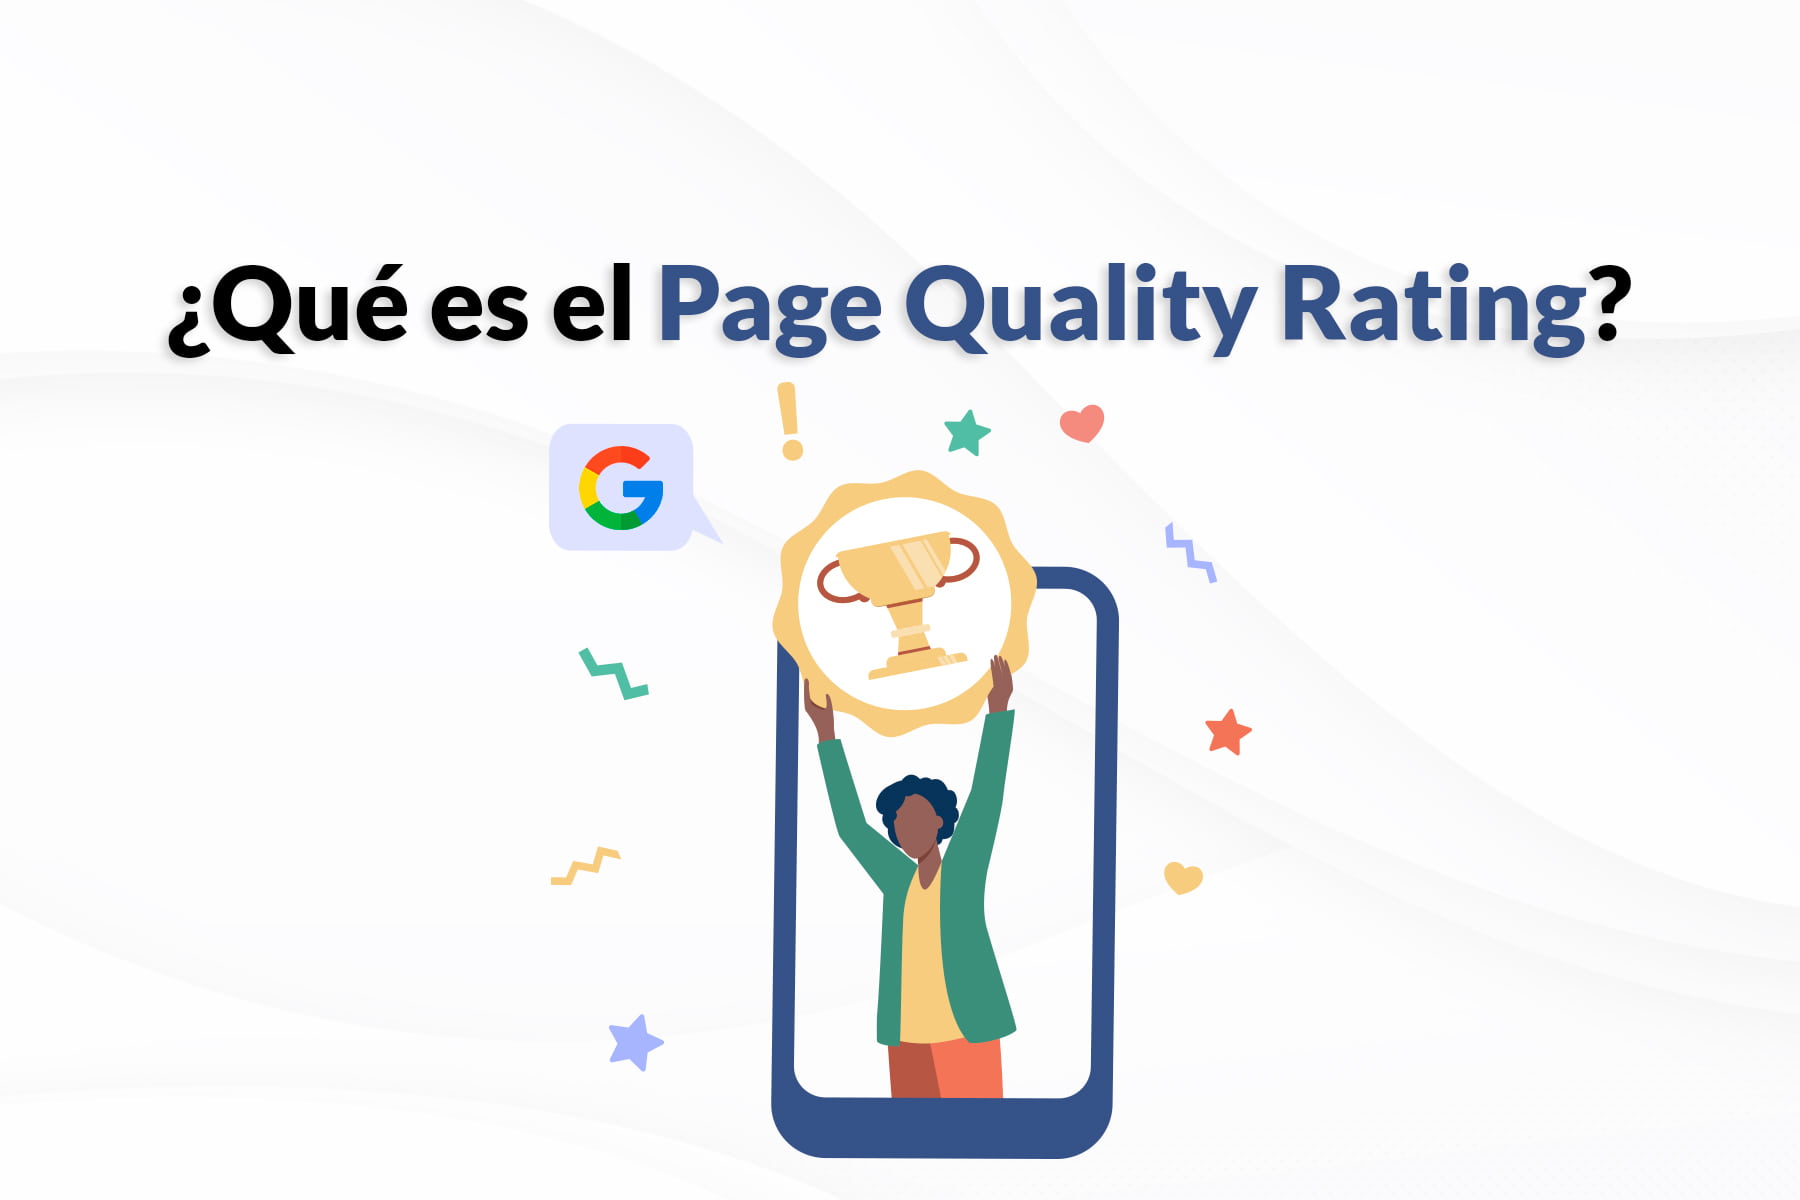 Qué es el page quality rating